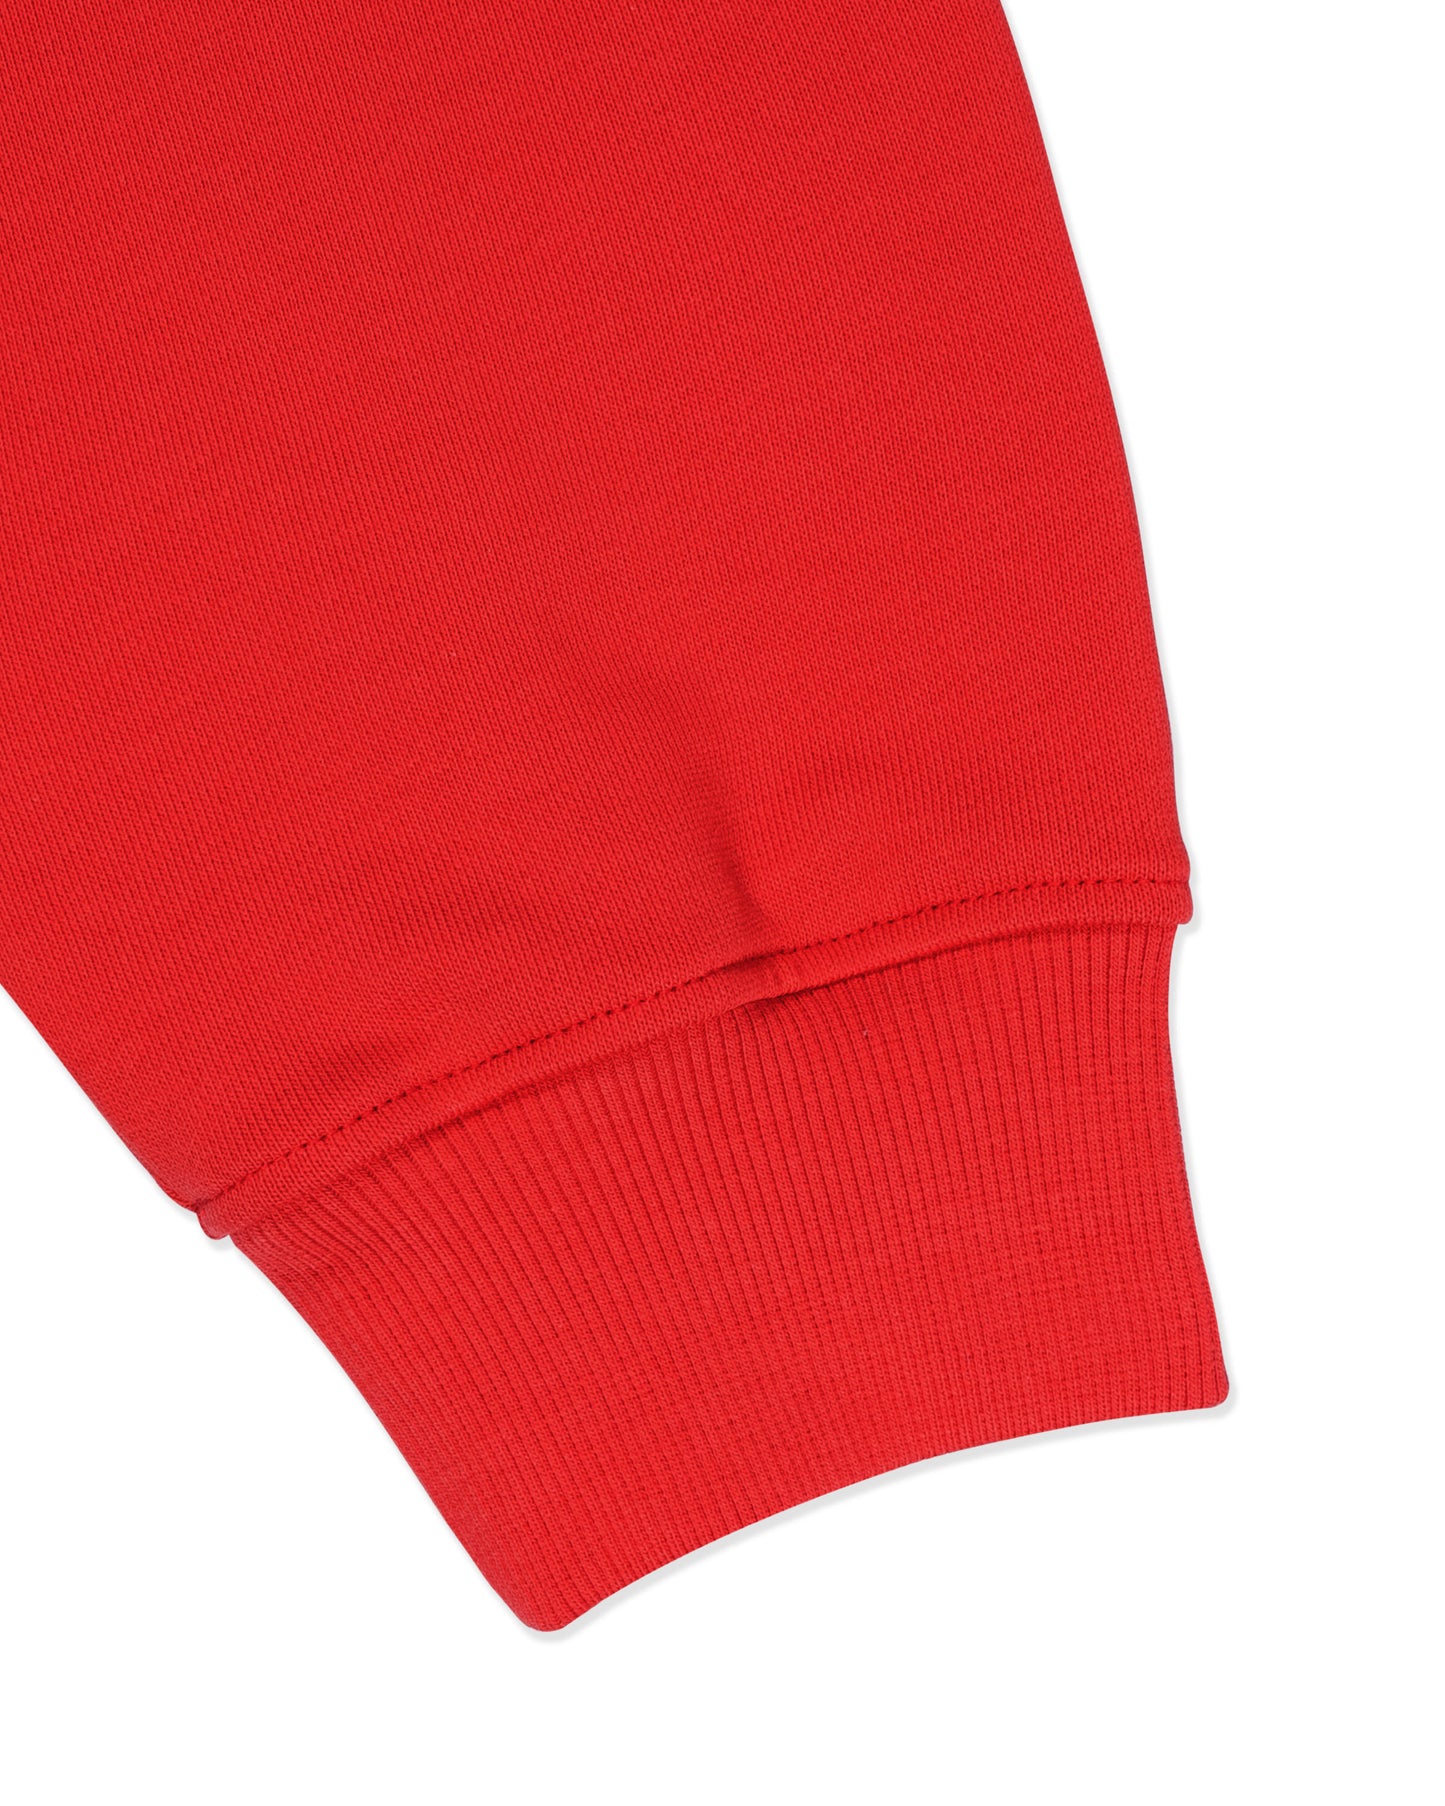 Levents® Classic Zipper Hoodie/ Dark Red